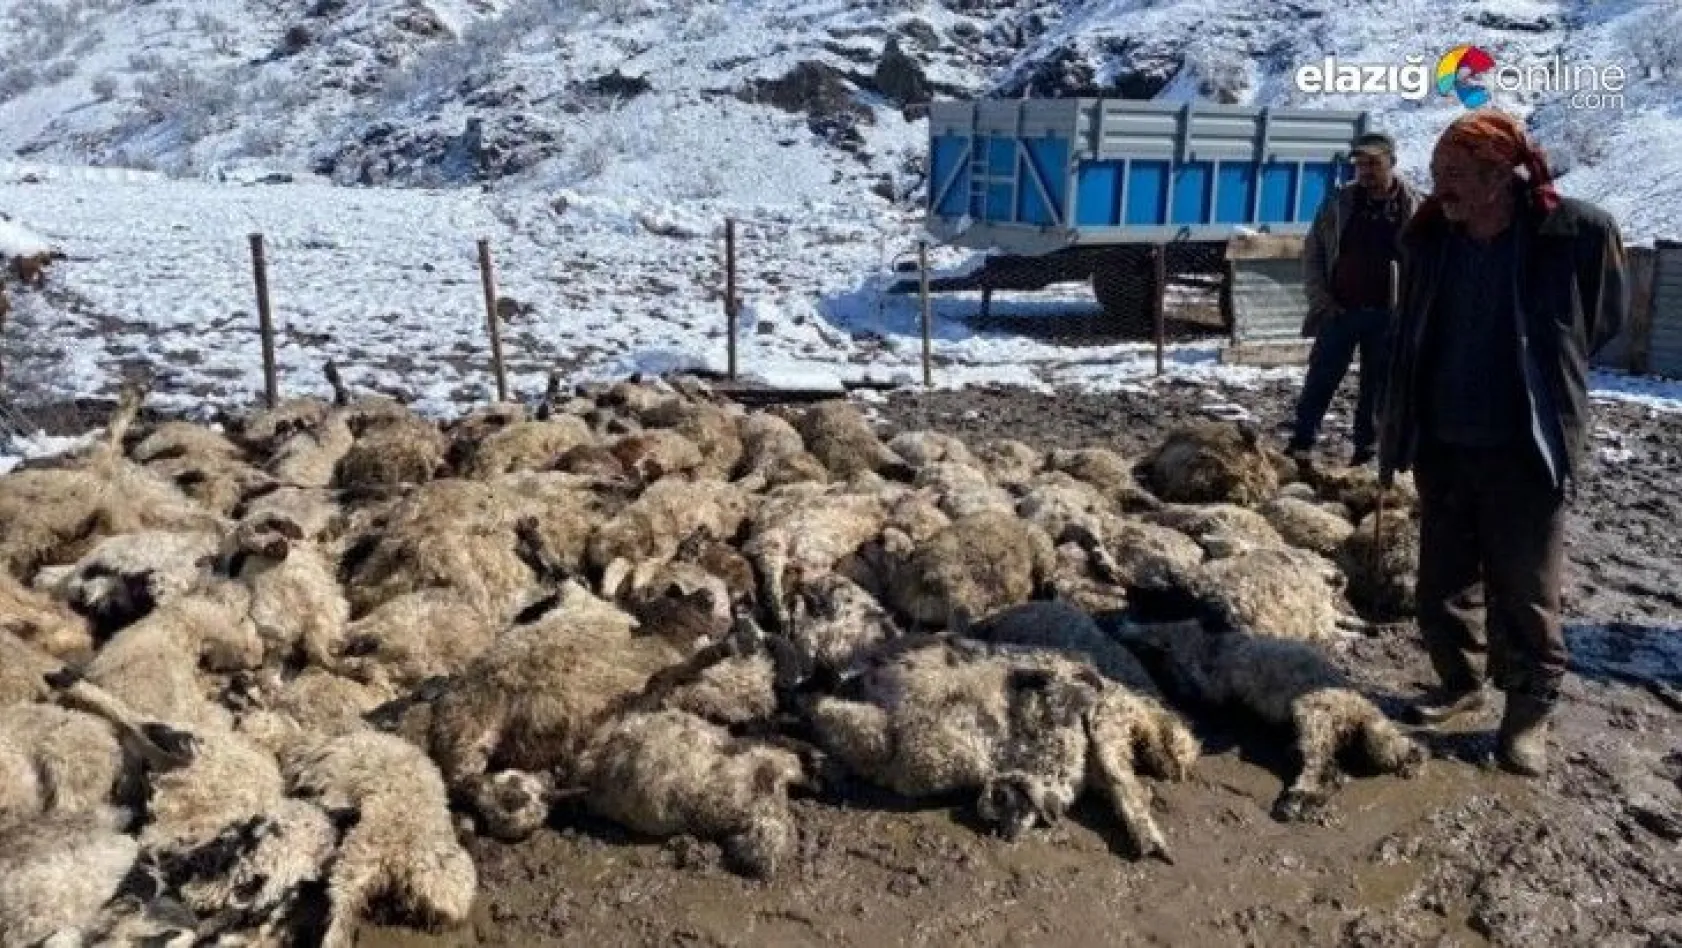 Koyun kuzu izdihamında 82 hayvan telef oldu